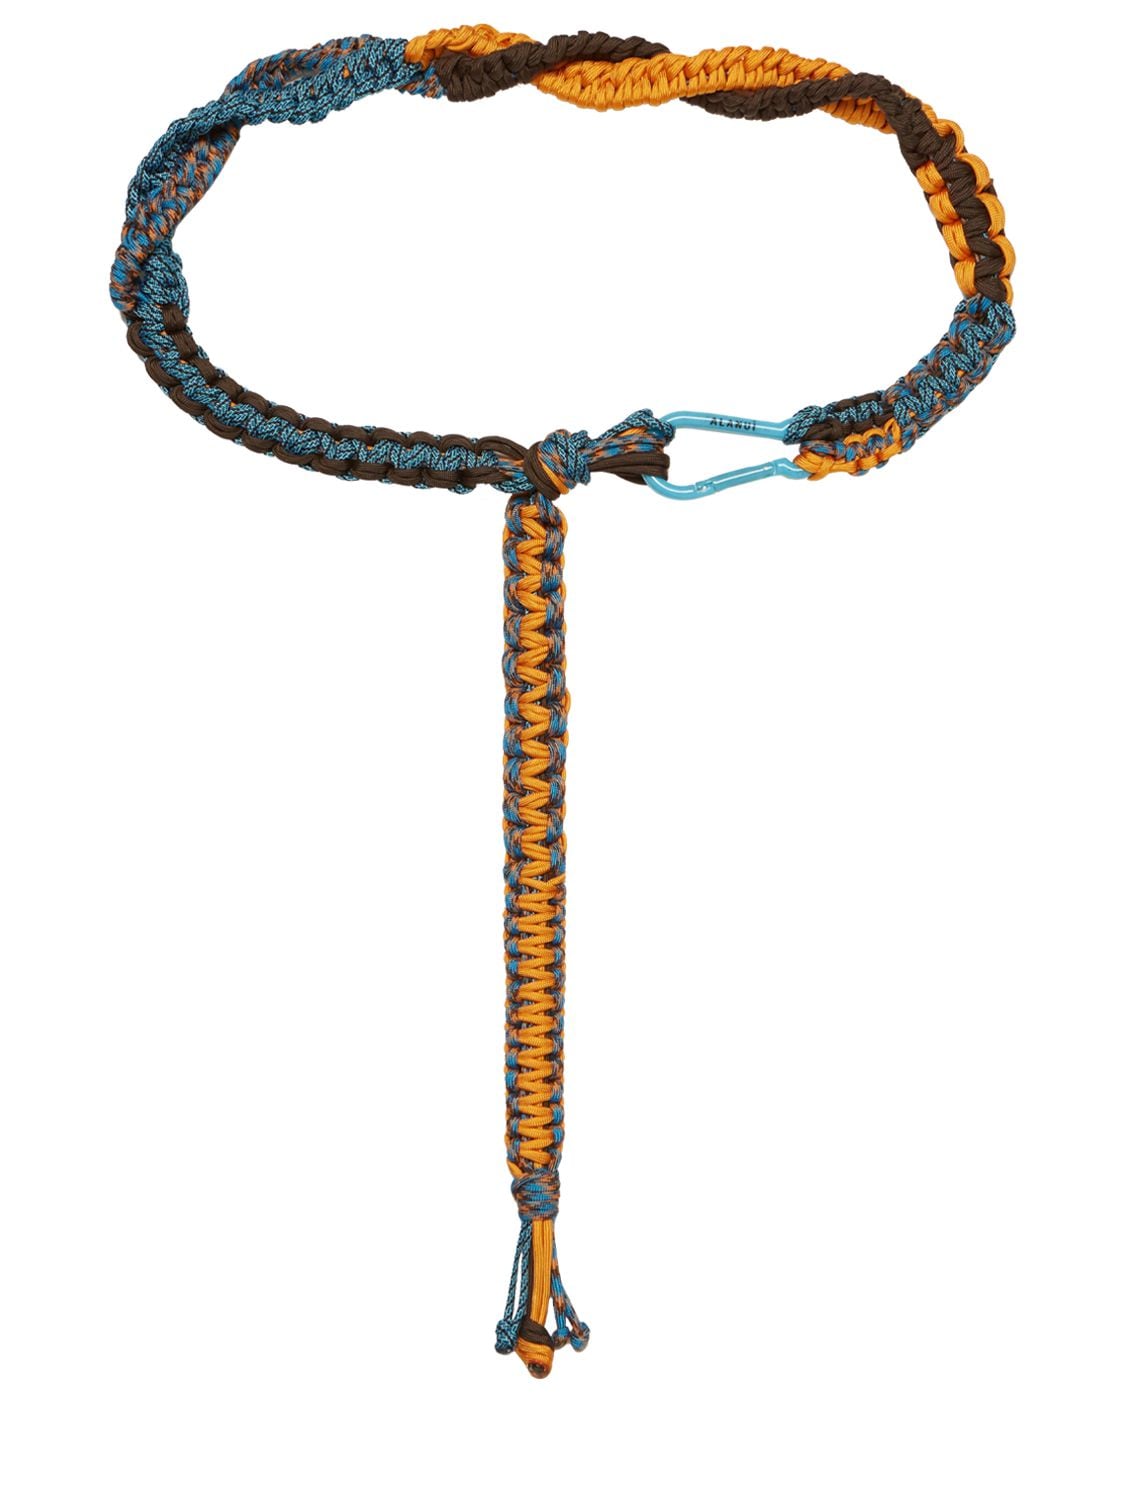 Image of Rope Belt W/ Carabiner Closure